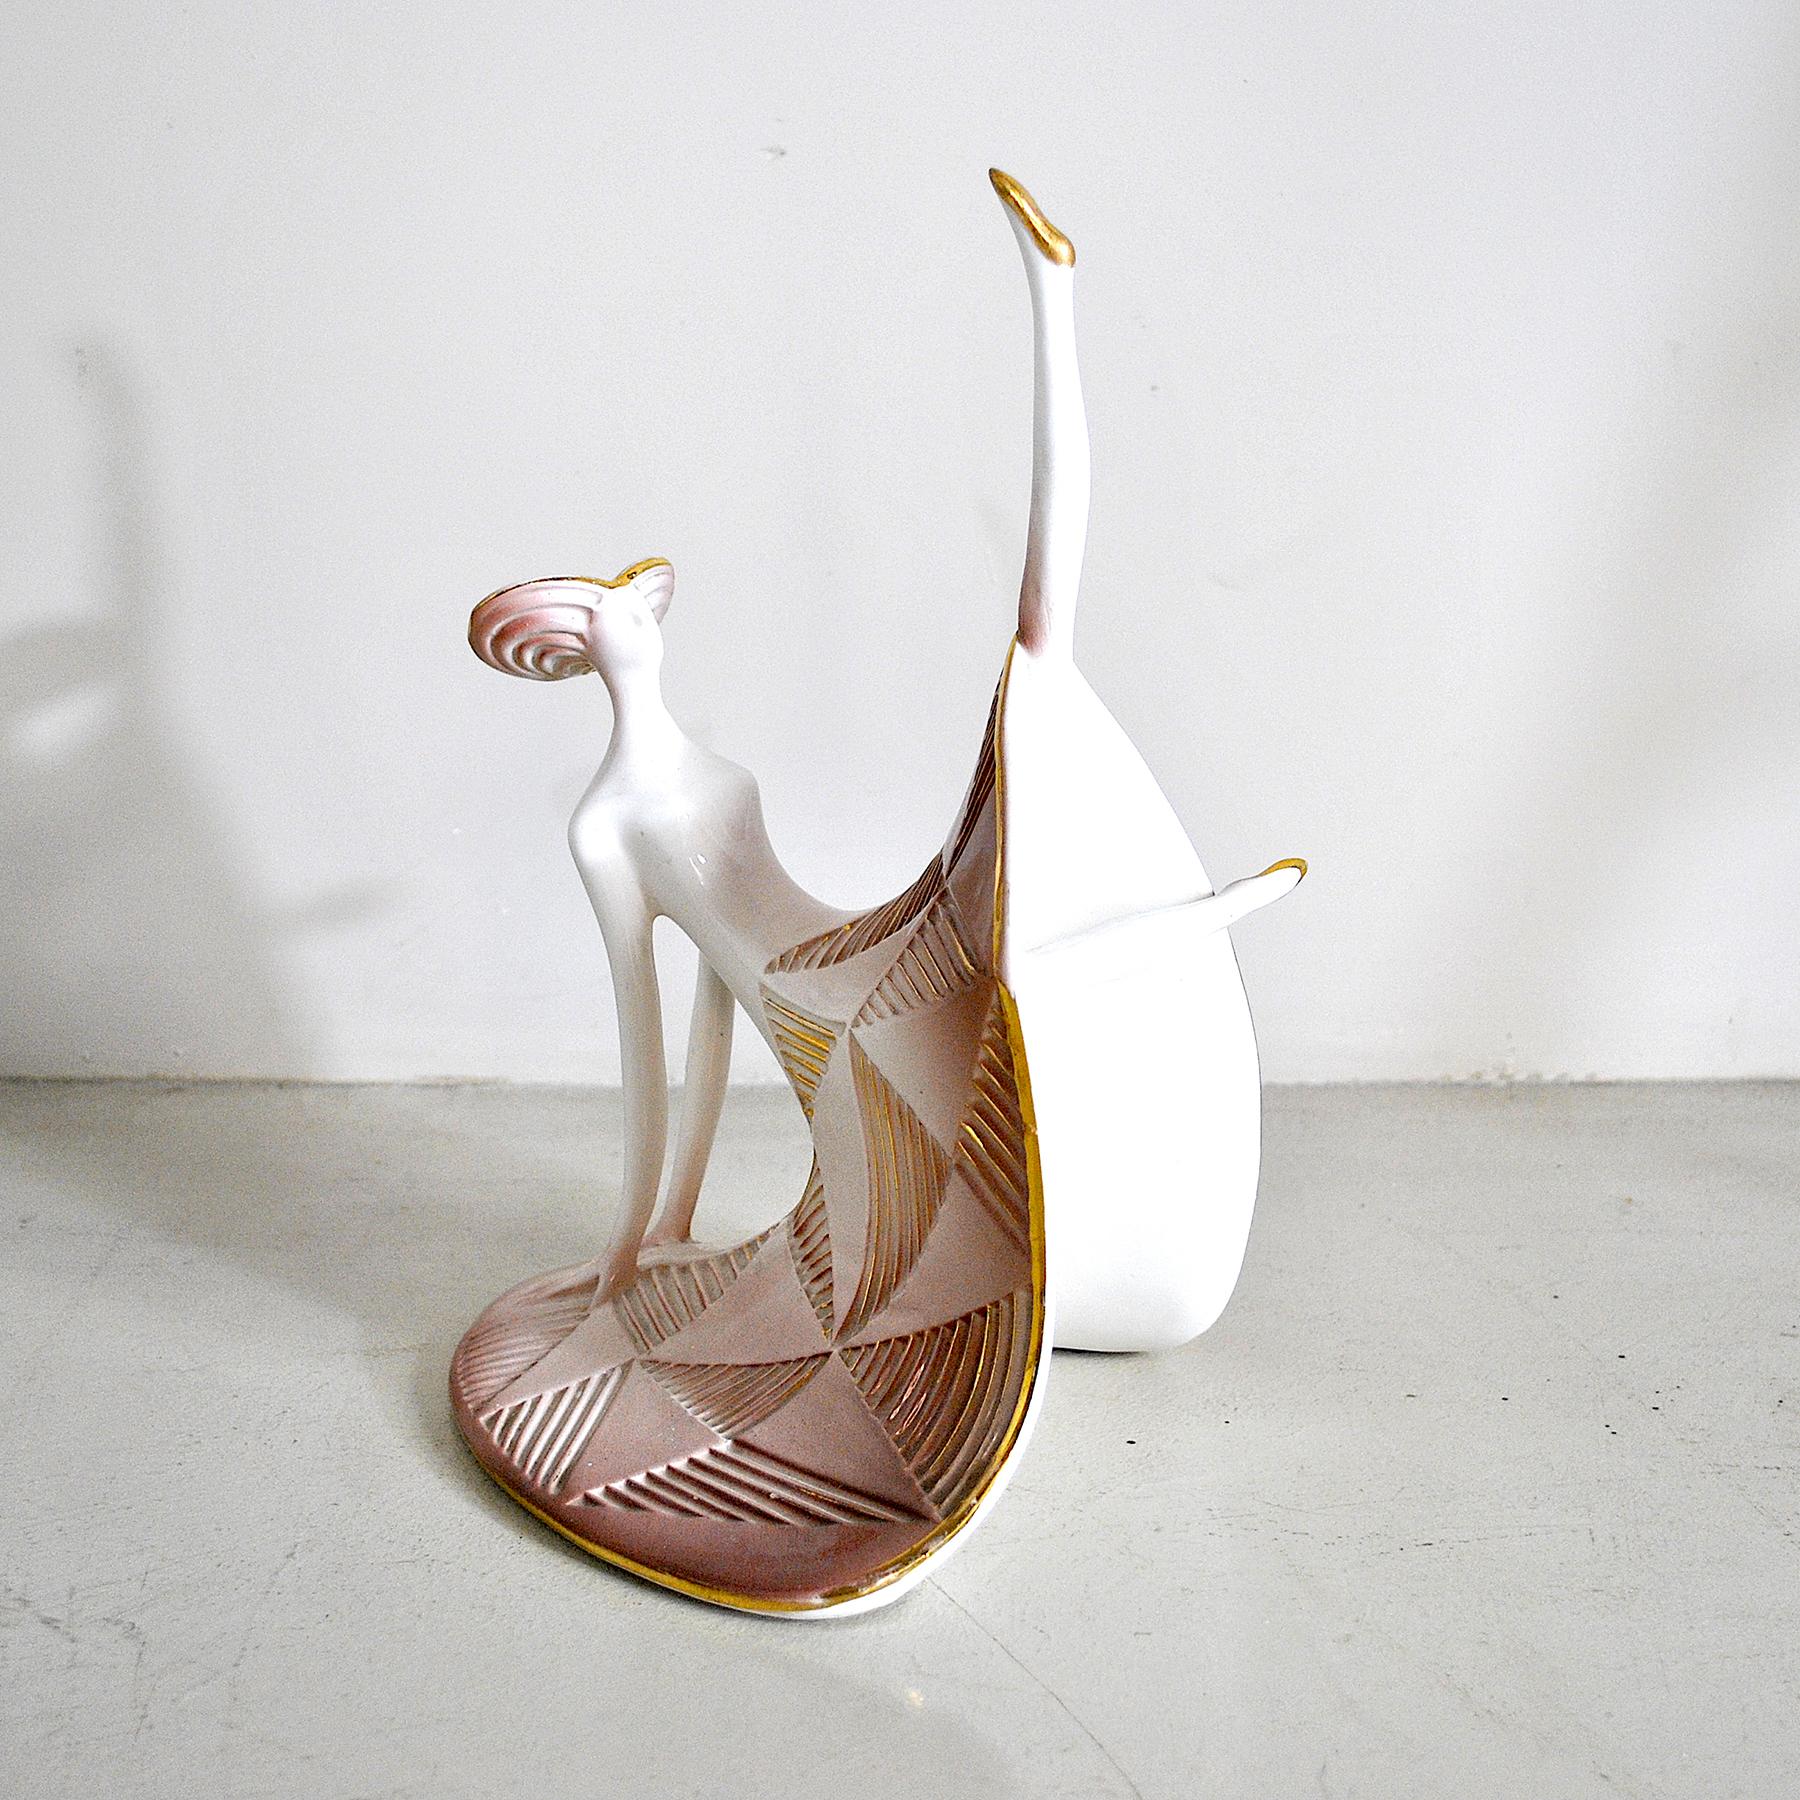 Futurist Art Déco Polychrome Ceramic Dancer from the 1930s